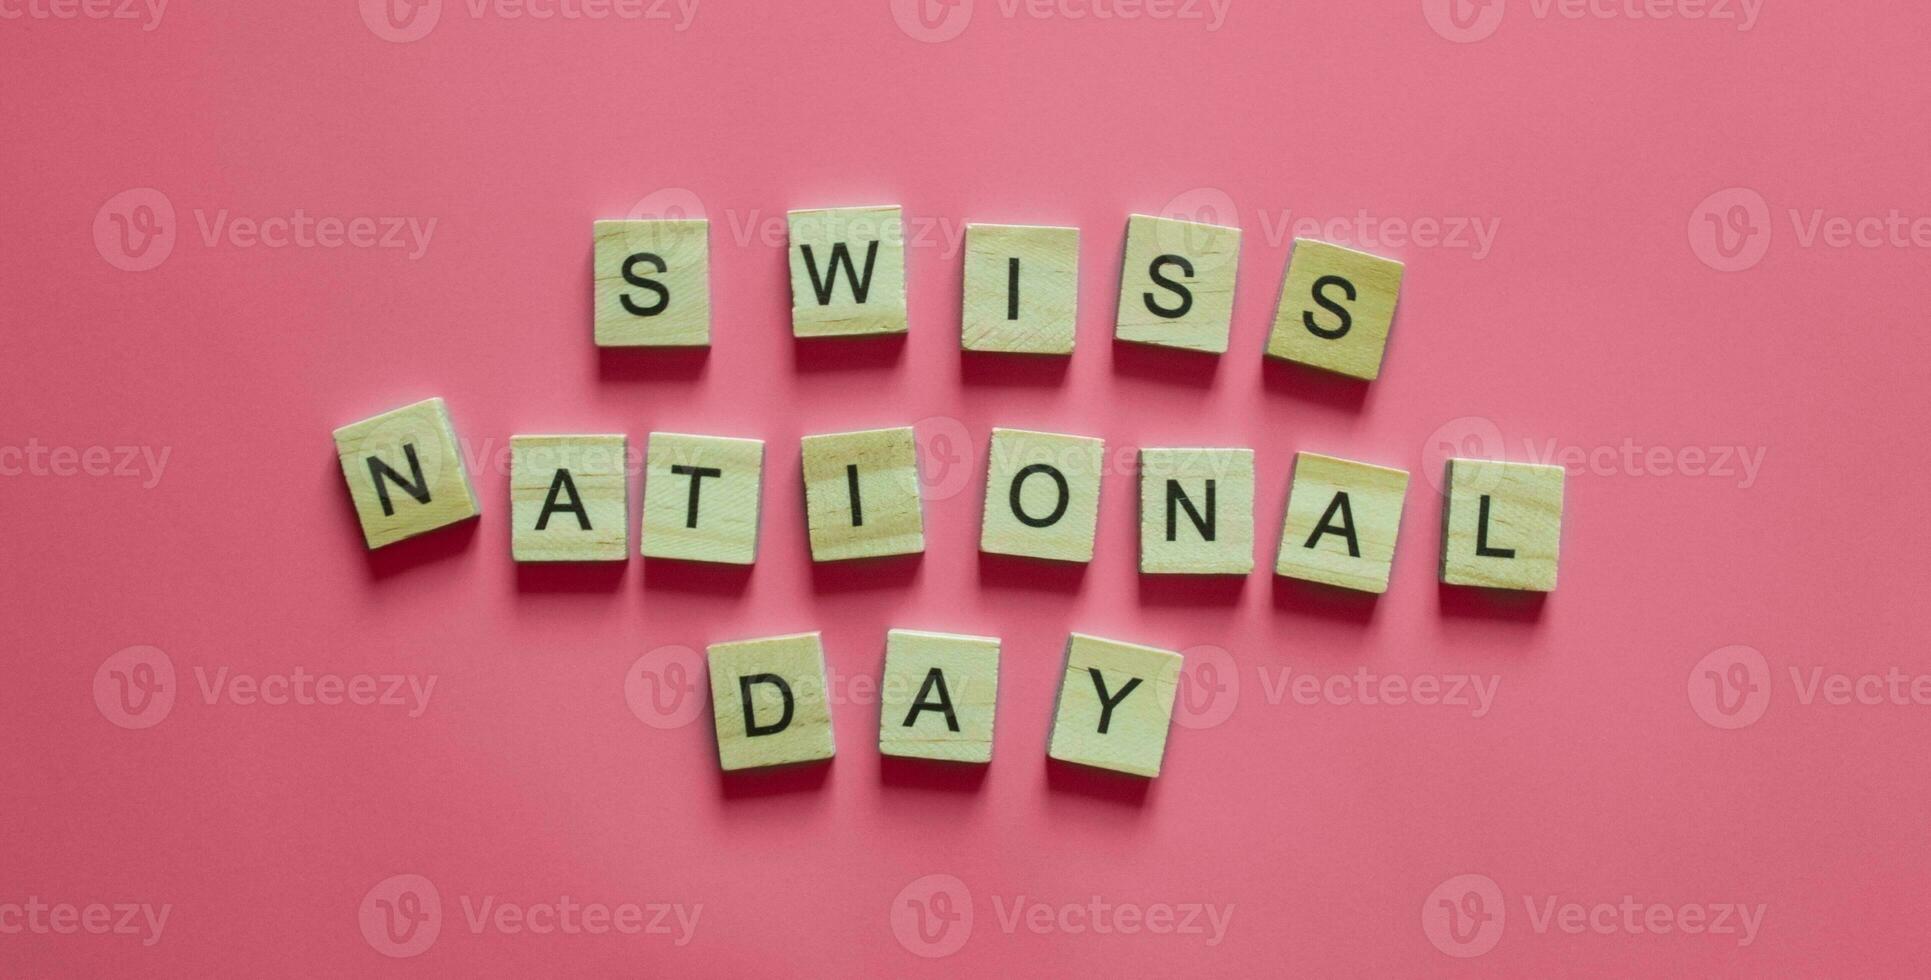 août 1, confédération jour, une nationale vacances dans Suisse, une minimaliste bannière avec le une inscription Suisse nationale journée photo